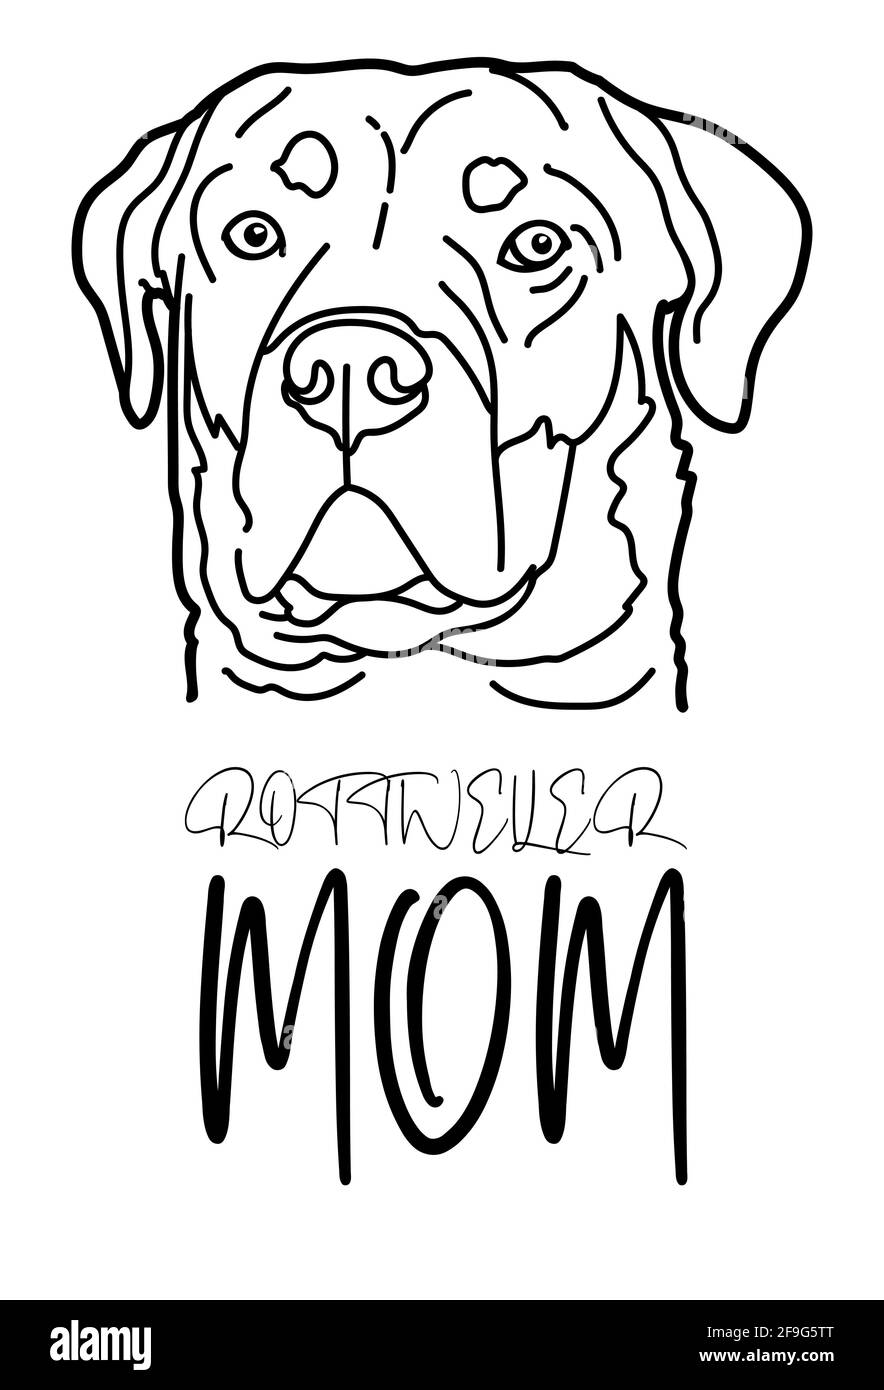 Rottweiler chien race portrait d'animal et lettrage manuscrit, Rottweiler maman, isolé sur fond blanc, illustration vectorielle. Illustration de Vecteur